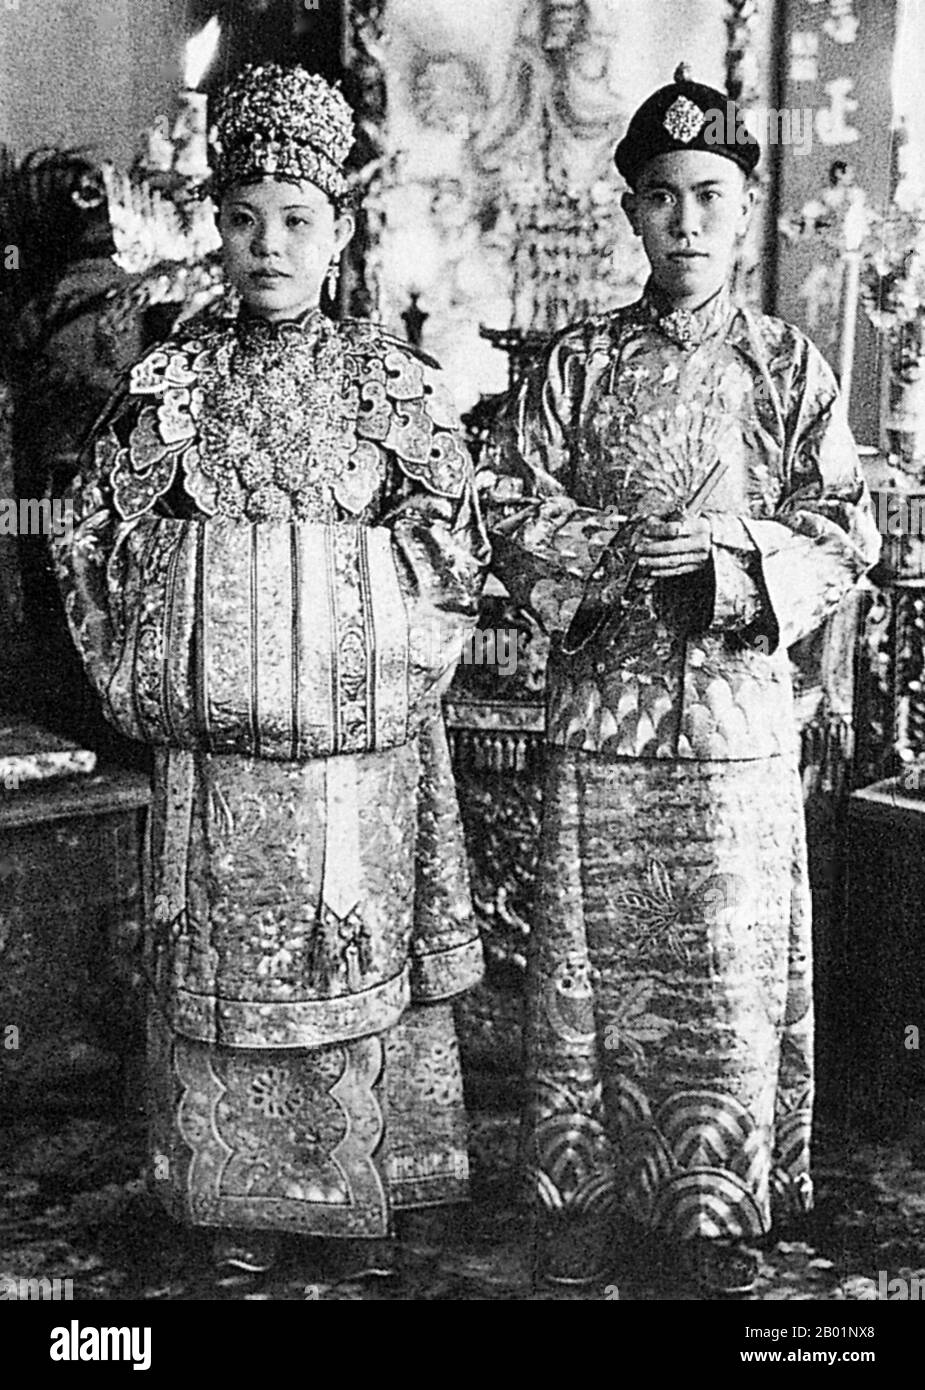 Malaysia/Singapur: Eine Peranakan Braut und Bräutigam, Melaka (Malakka), Anfang des 20. Jahrhunderts. Peranakan Chinese und Baba-Nyonya sind die Bezeichnungen für die Nachkommen chinesischer Einwanderer aus dem späten 15. Und 16. Jahrhundert, die während der Kolonialzeit in den malaiisch-indonesischen Archipel von Nusantara kamen. Mitglieder dieser Gemeinde in Malaysia bezeichnen sich als „Nyonya-Baba“ oder „Baba-Nyonya“. Nyonya ist der Begriff für die Weibchen und Baba für die Männchen. Sie gilt insbesondere für die ethnischen chinesischen Bevölkerungsgruppen der British Straits Settlements in Malaya und der von den Niederlanden kontrollierten Insel Java und anderen Orten. Stockfoto